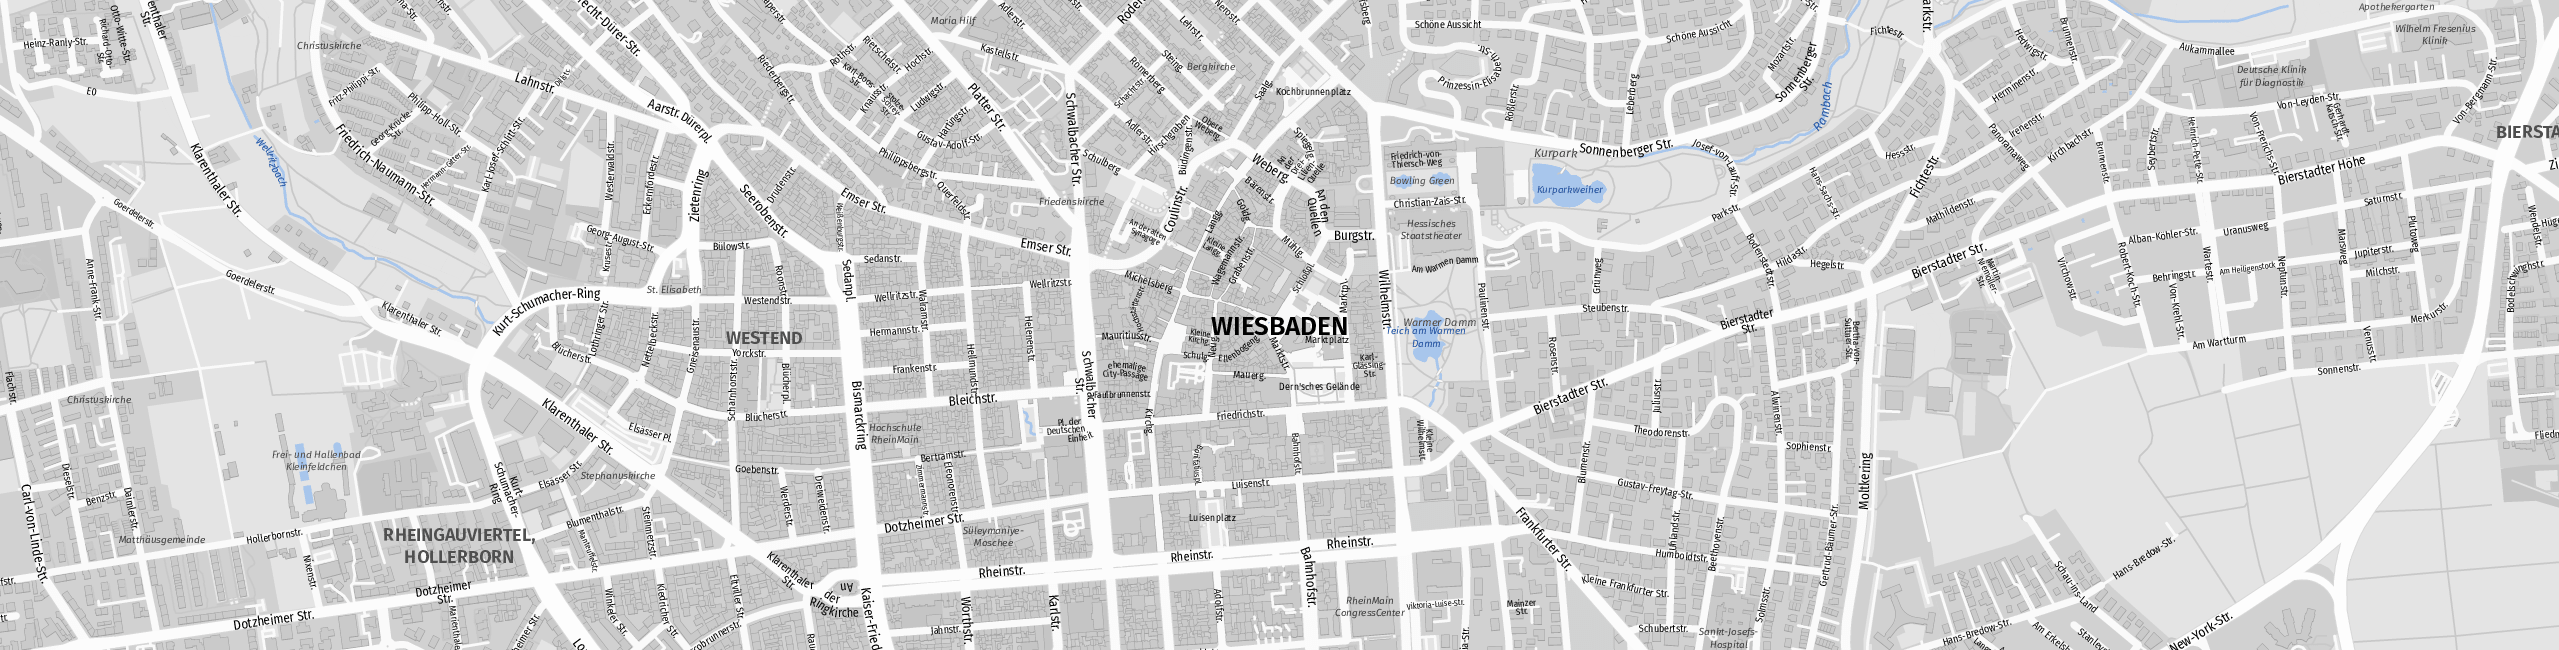 Stadtplan Wiesbaden zum Downloaden.